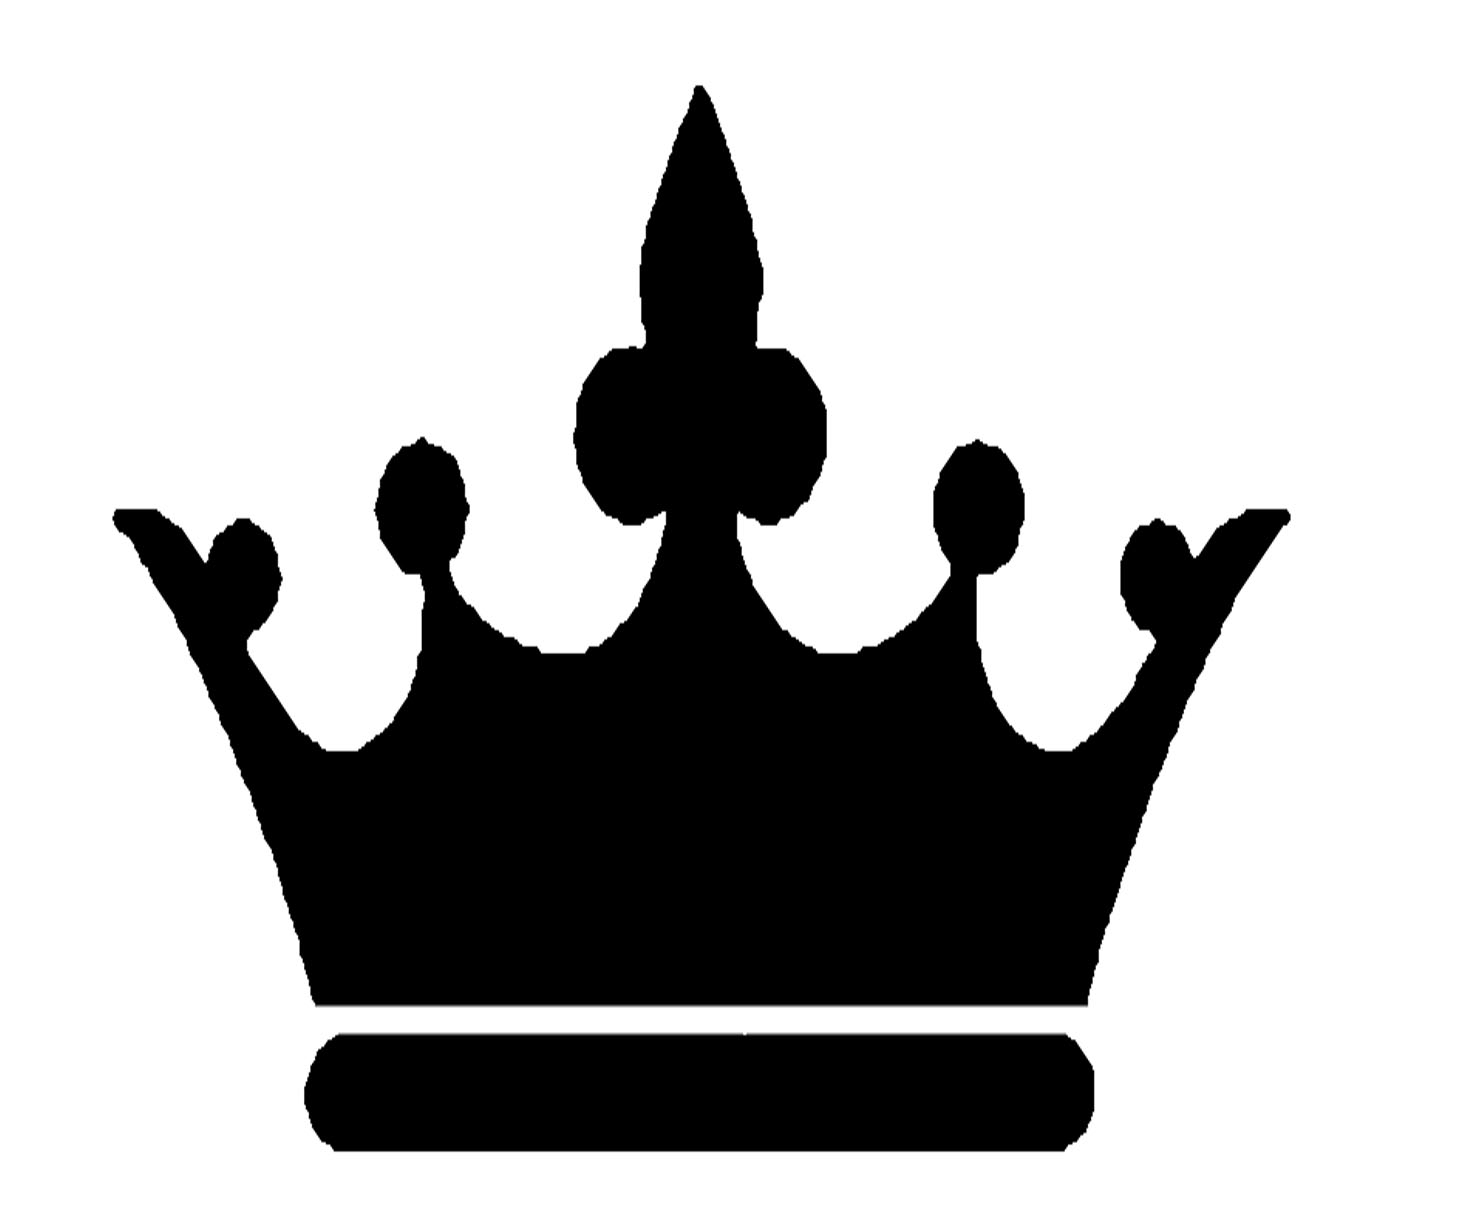 ... crown